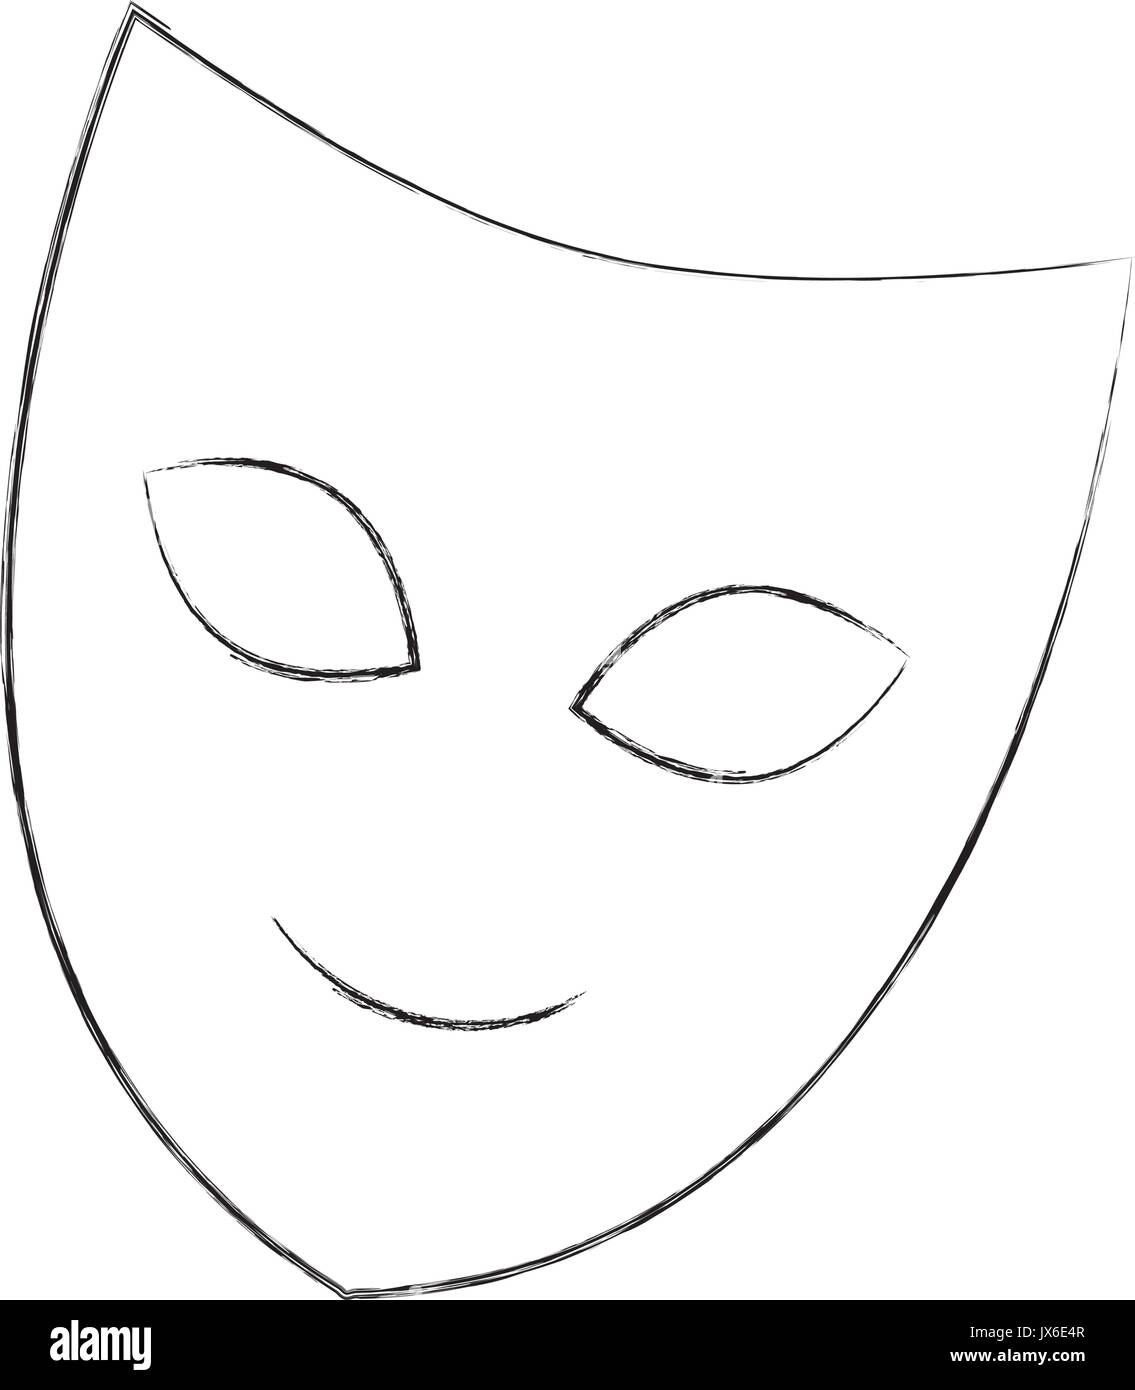 Маска формата а4. Театральная маска трафарет. Трафарет маски для лица. Трафареты театральных масок для лица. Театральная маска раскраска.